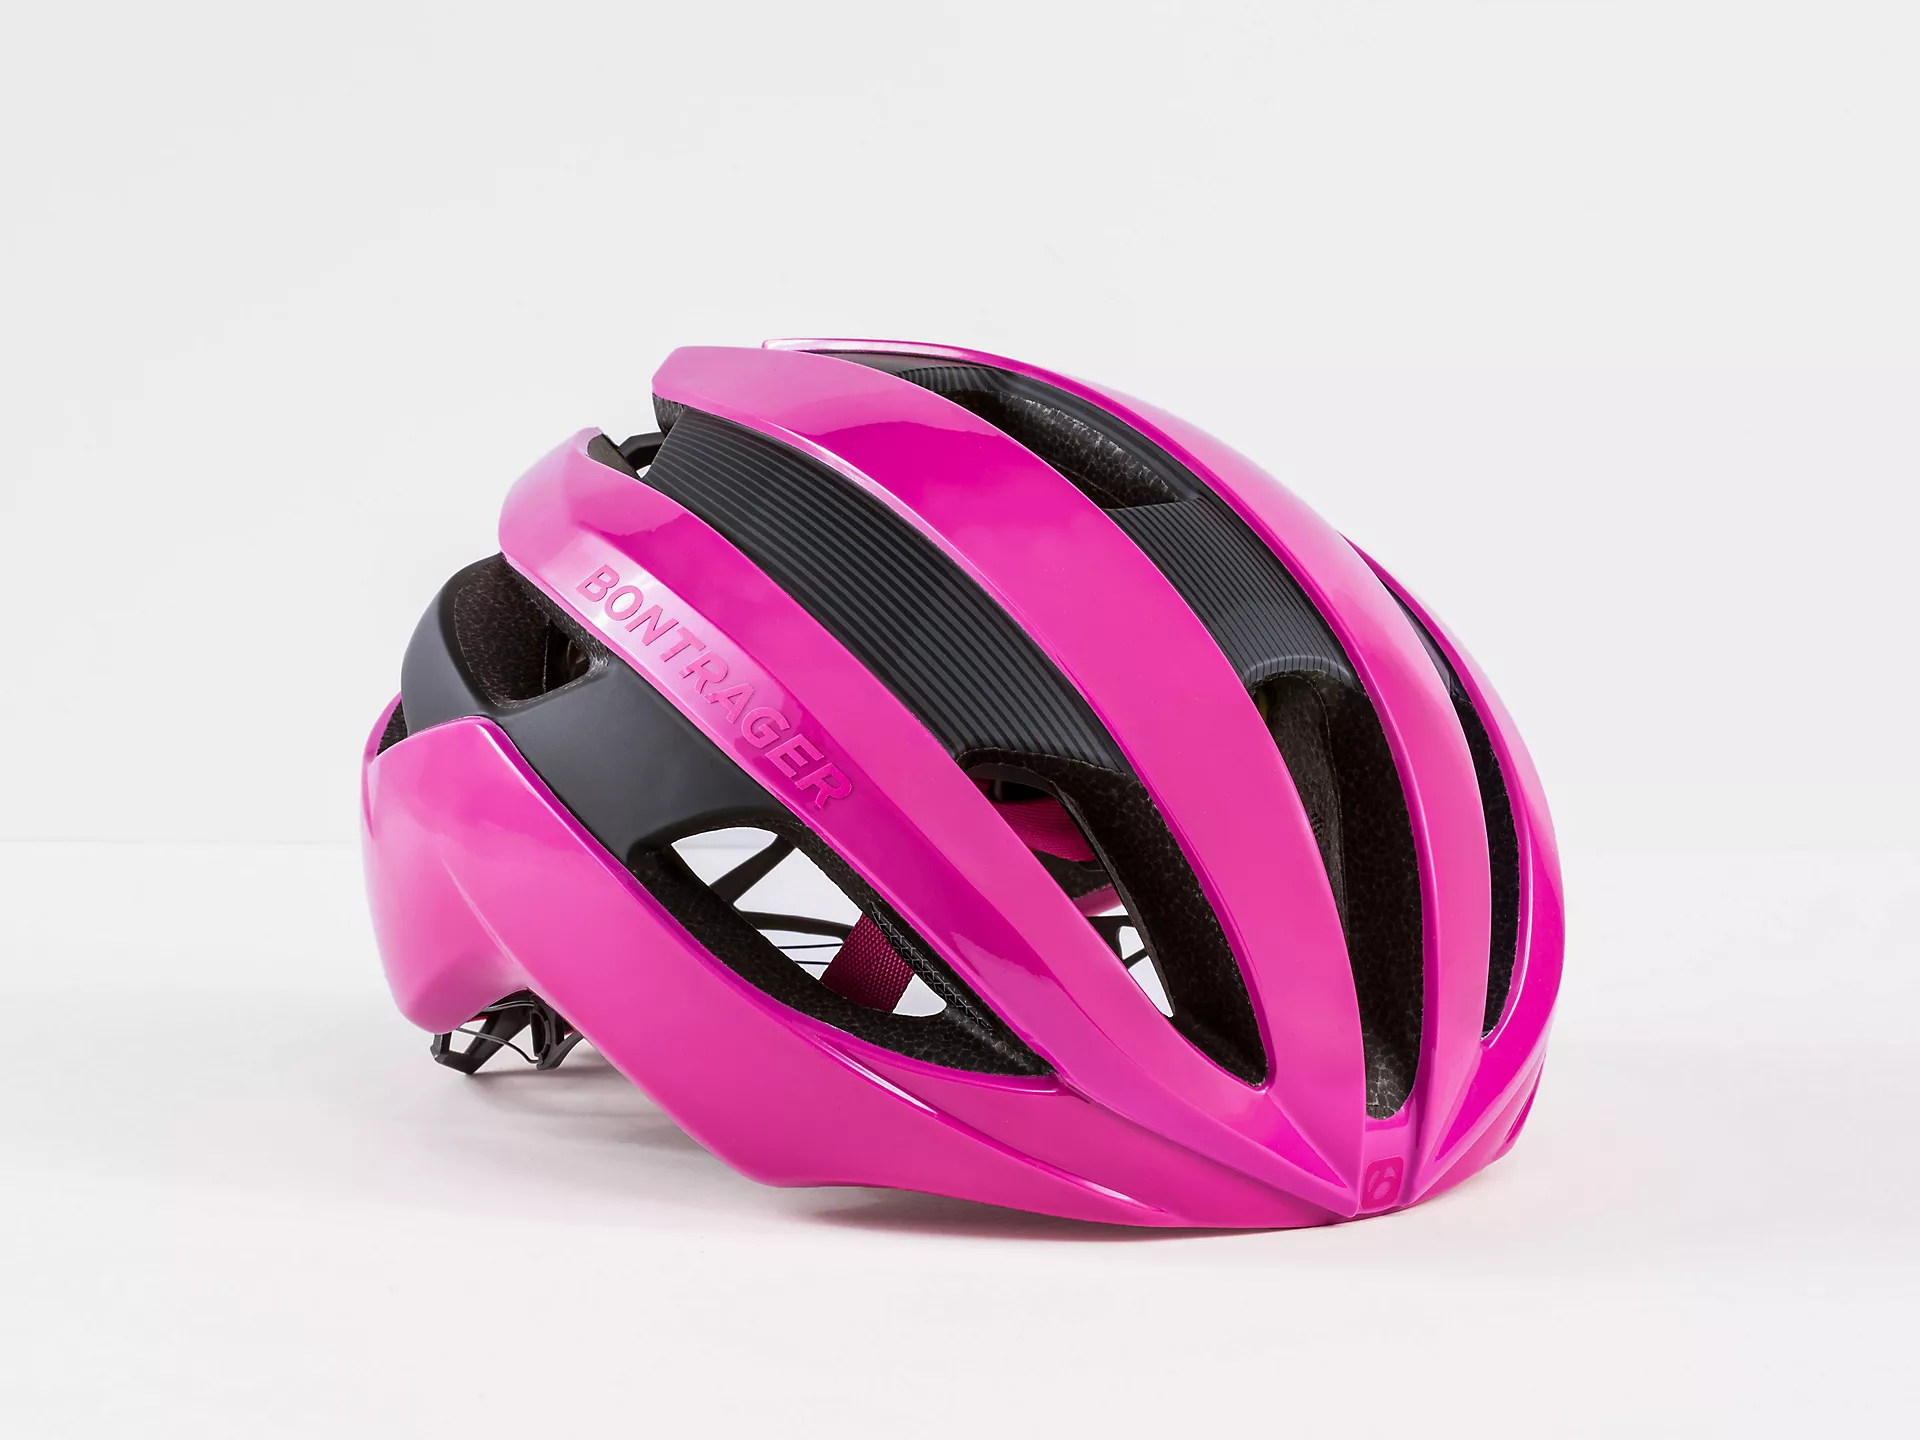 bontrager pink helmet